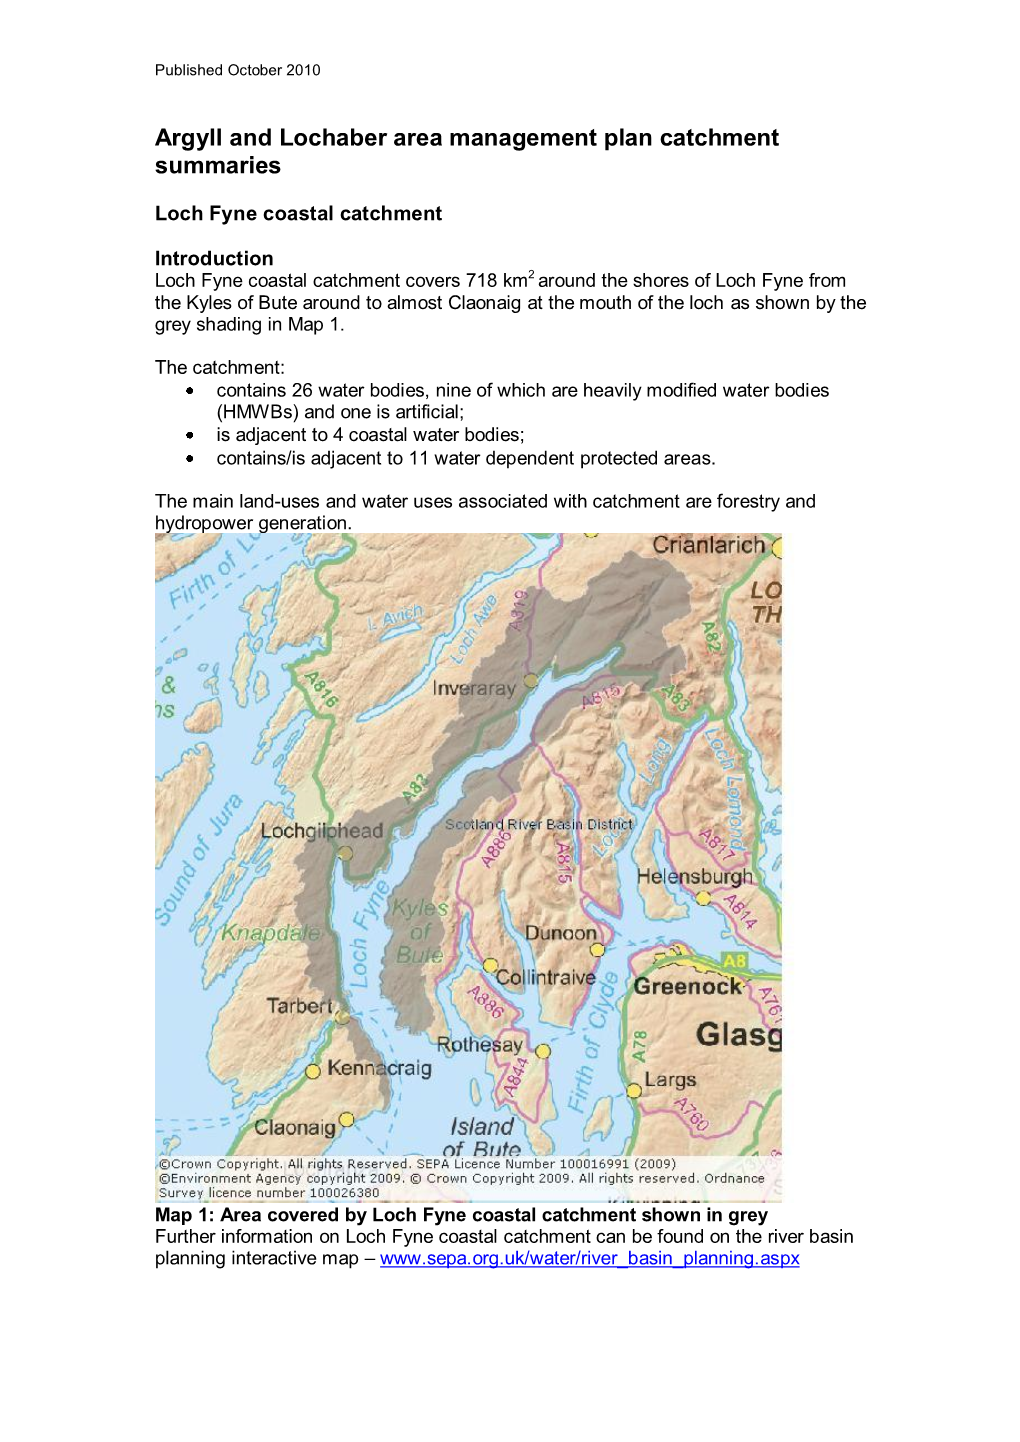 Loch Fyne Coastal Catchment Summary